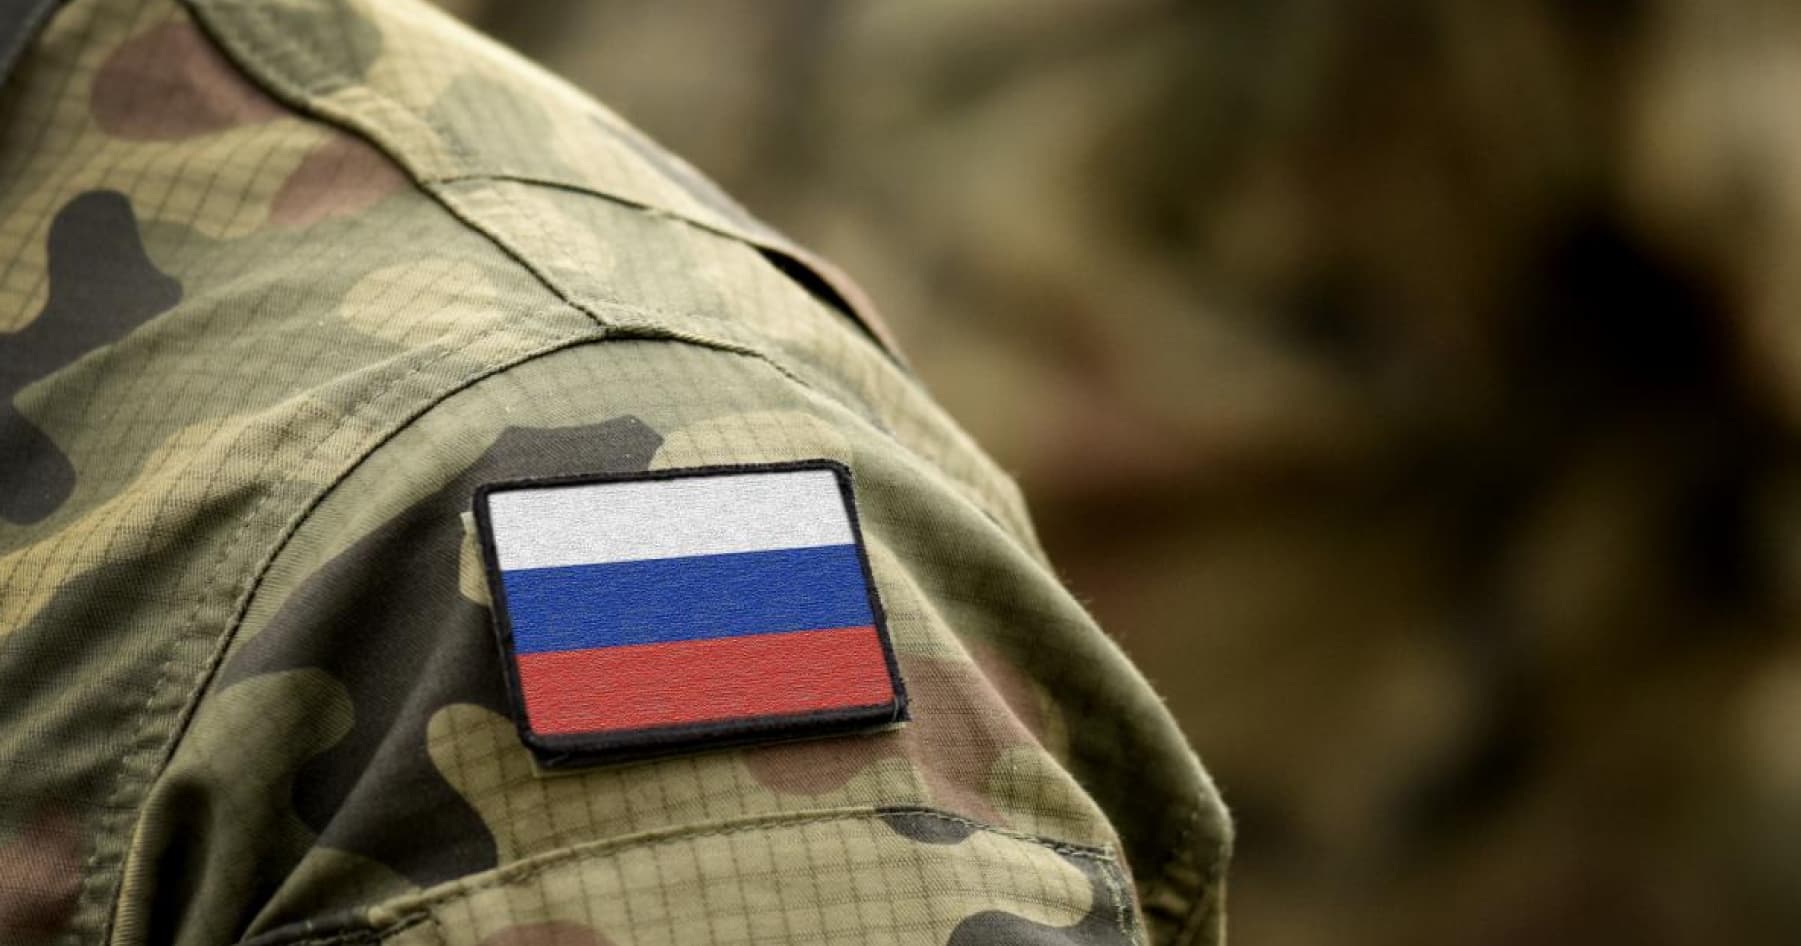 Російські спецслужби, імовірно, готують провокації проти громадян РФ, щоб звинуватити  Україну — ГУР